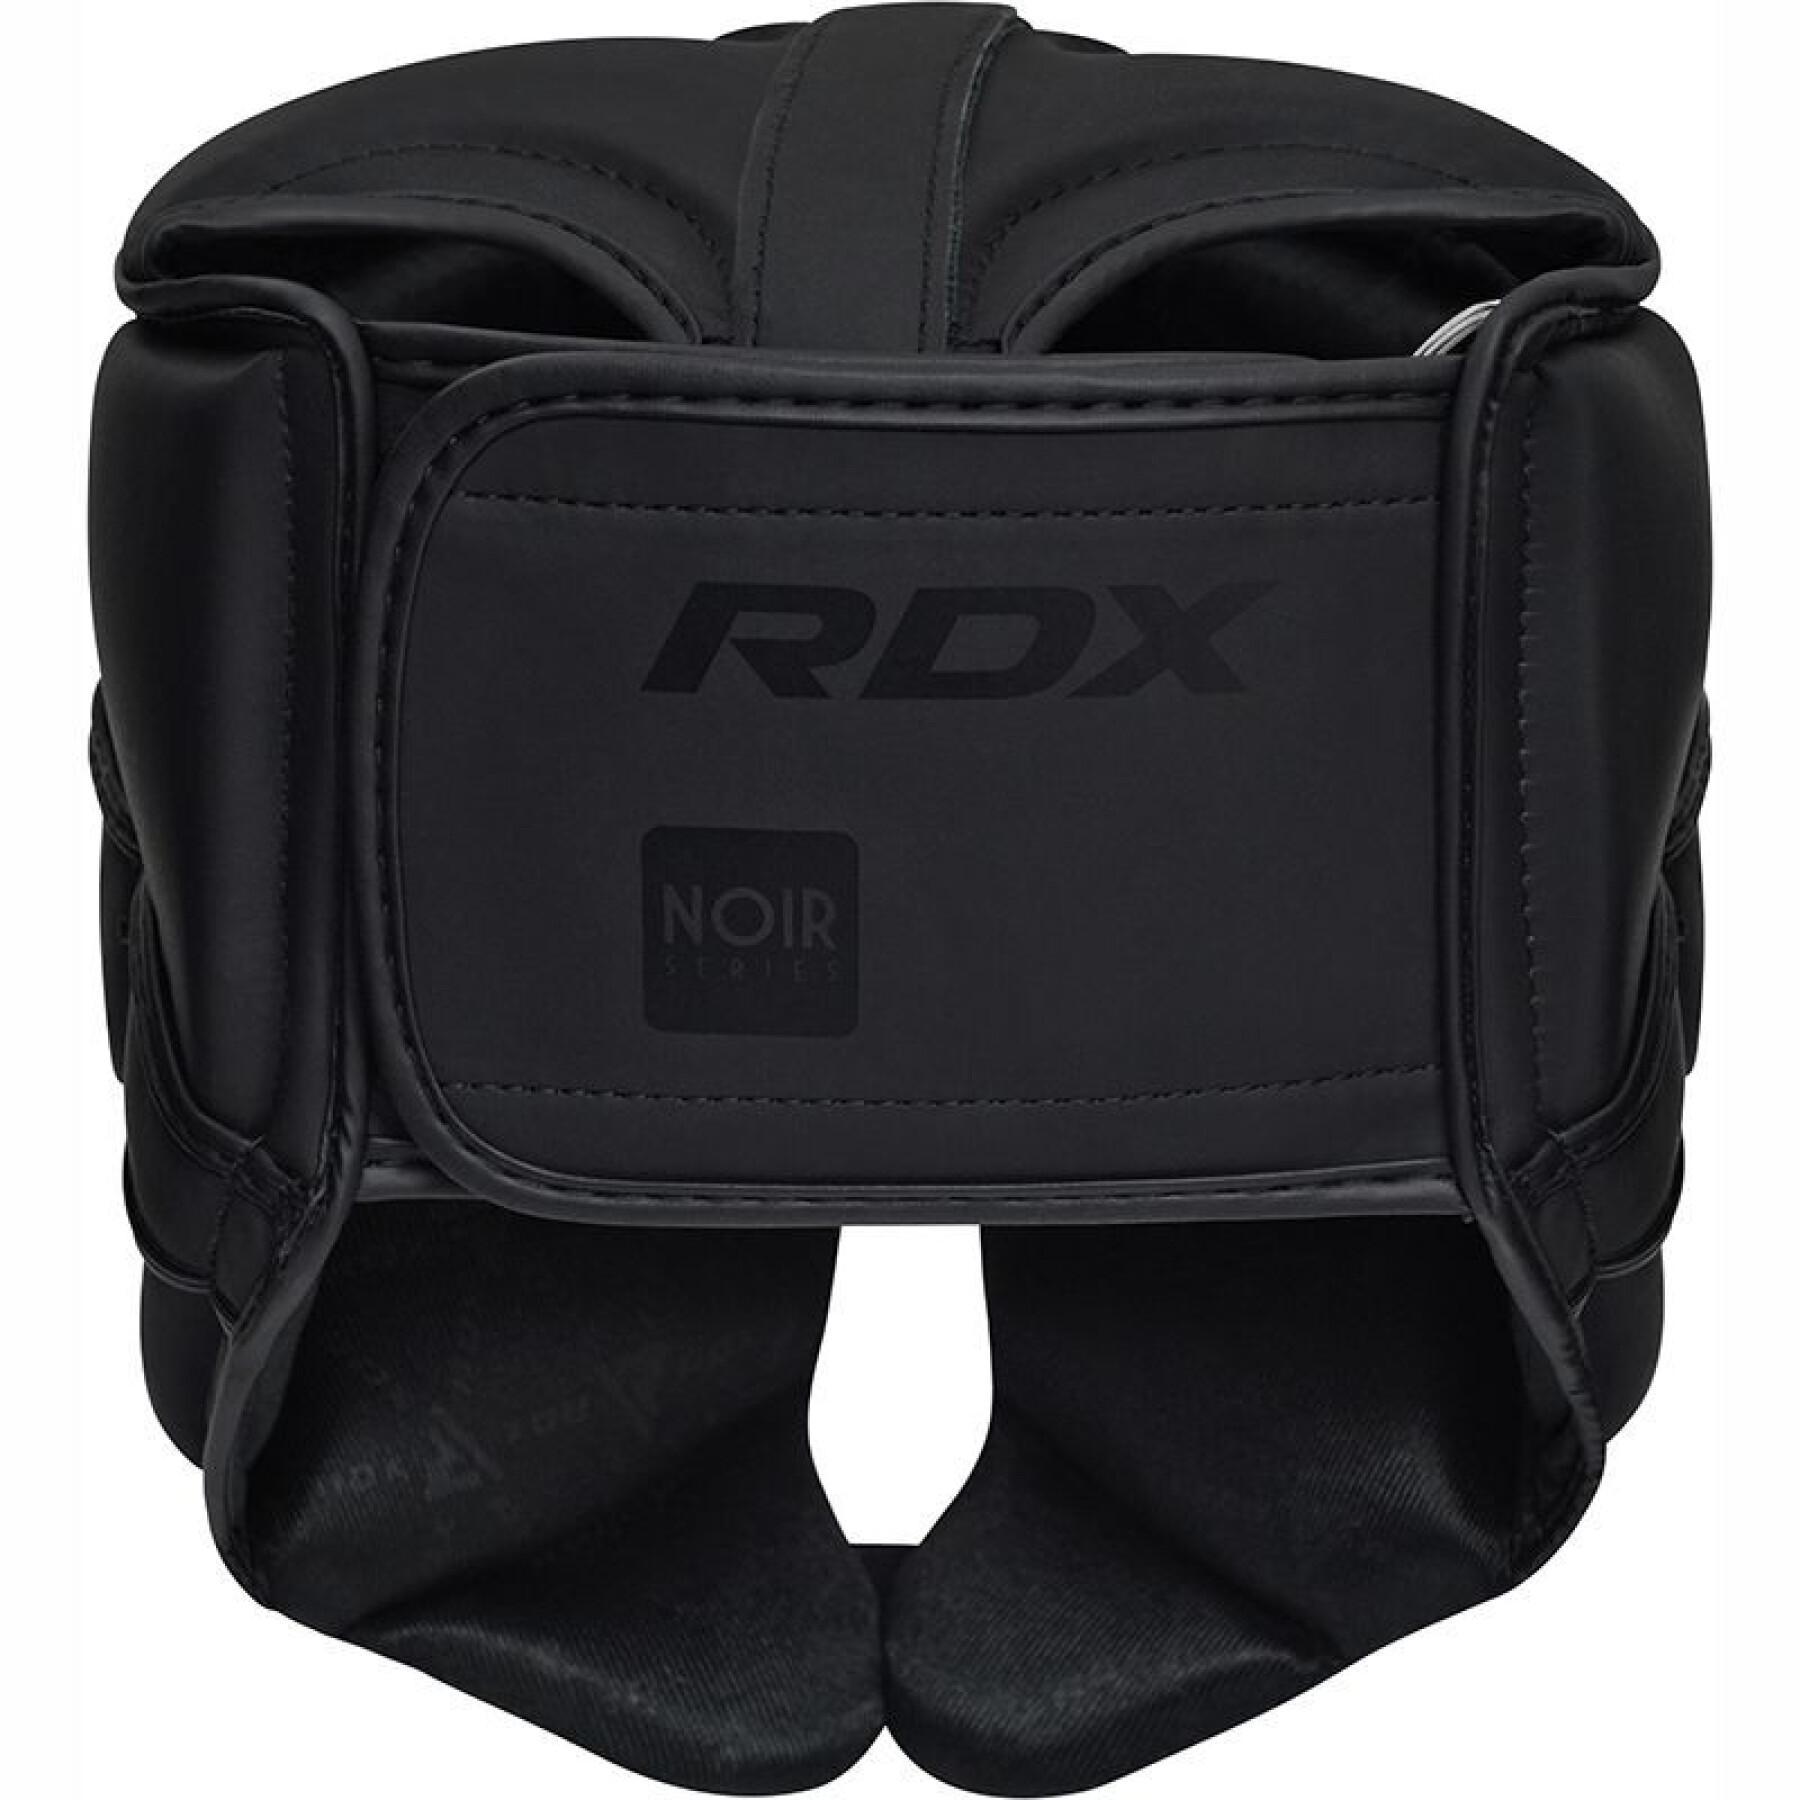 Casque de boxe RDX T15